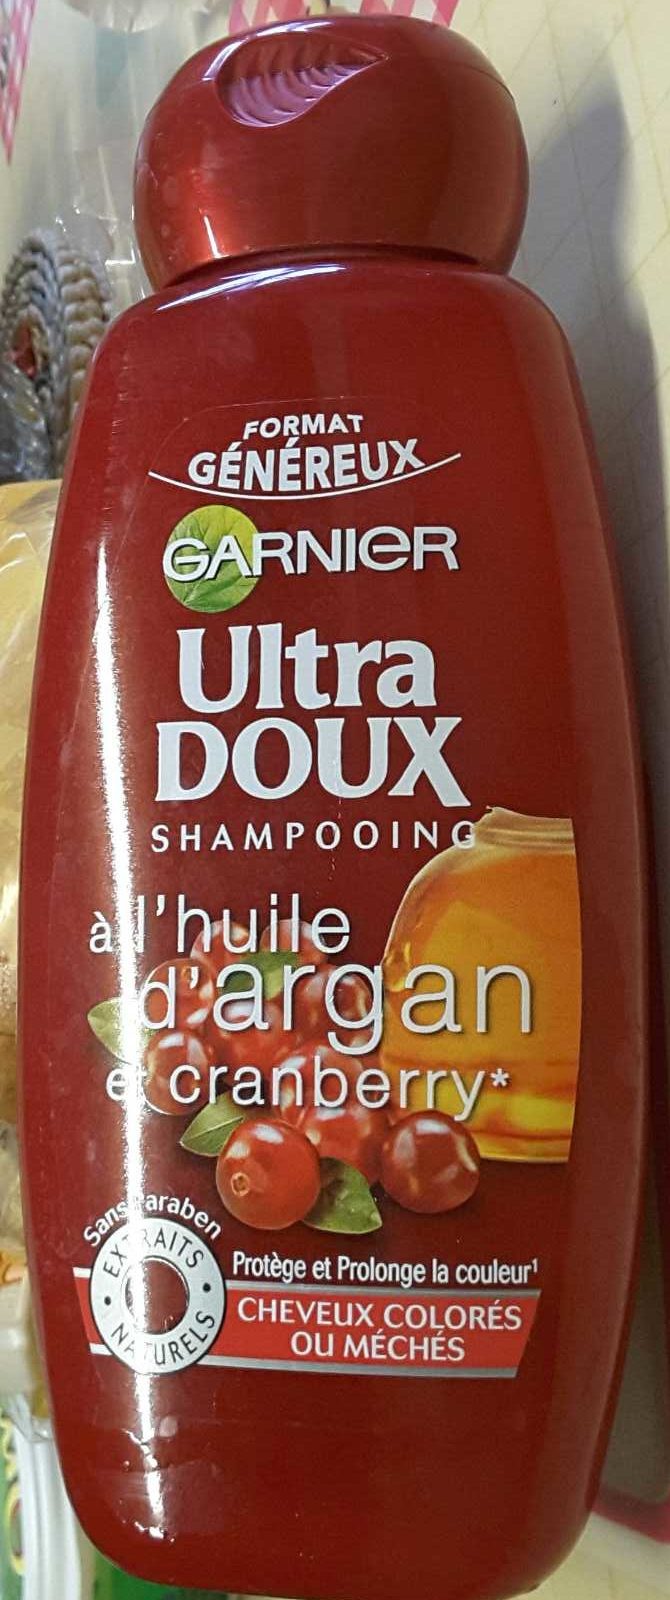 Ultra Doux Shampooing à l'huile d'argan et cranberry (format généreux) - Produit - fr